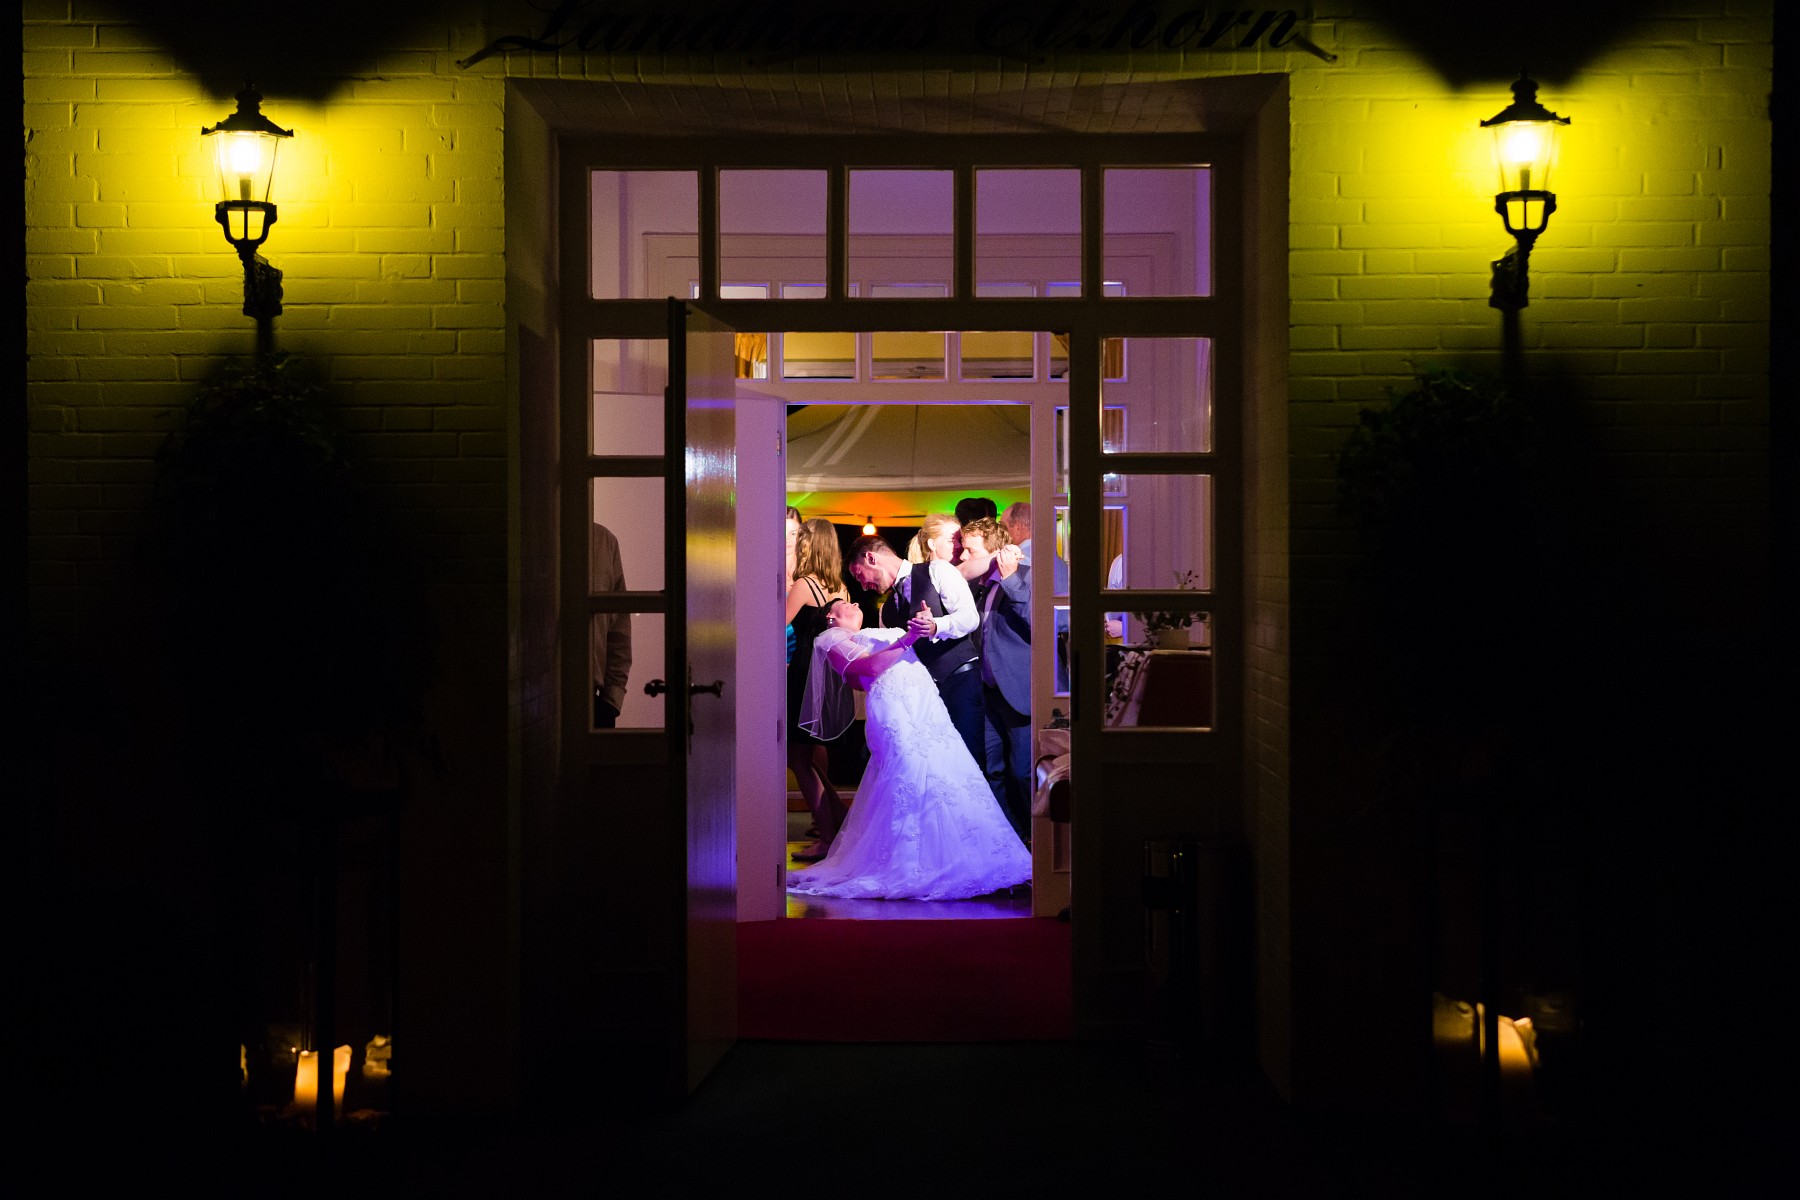 Freie Trauung und Hochzeitsfeier im Landhaus Etzhorn Oldenburg, Hochzeitsfotograf Thomas Weber